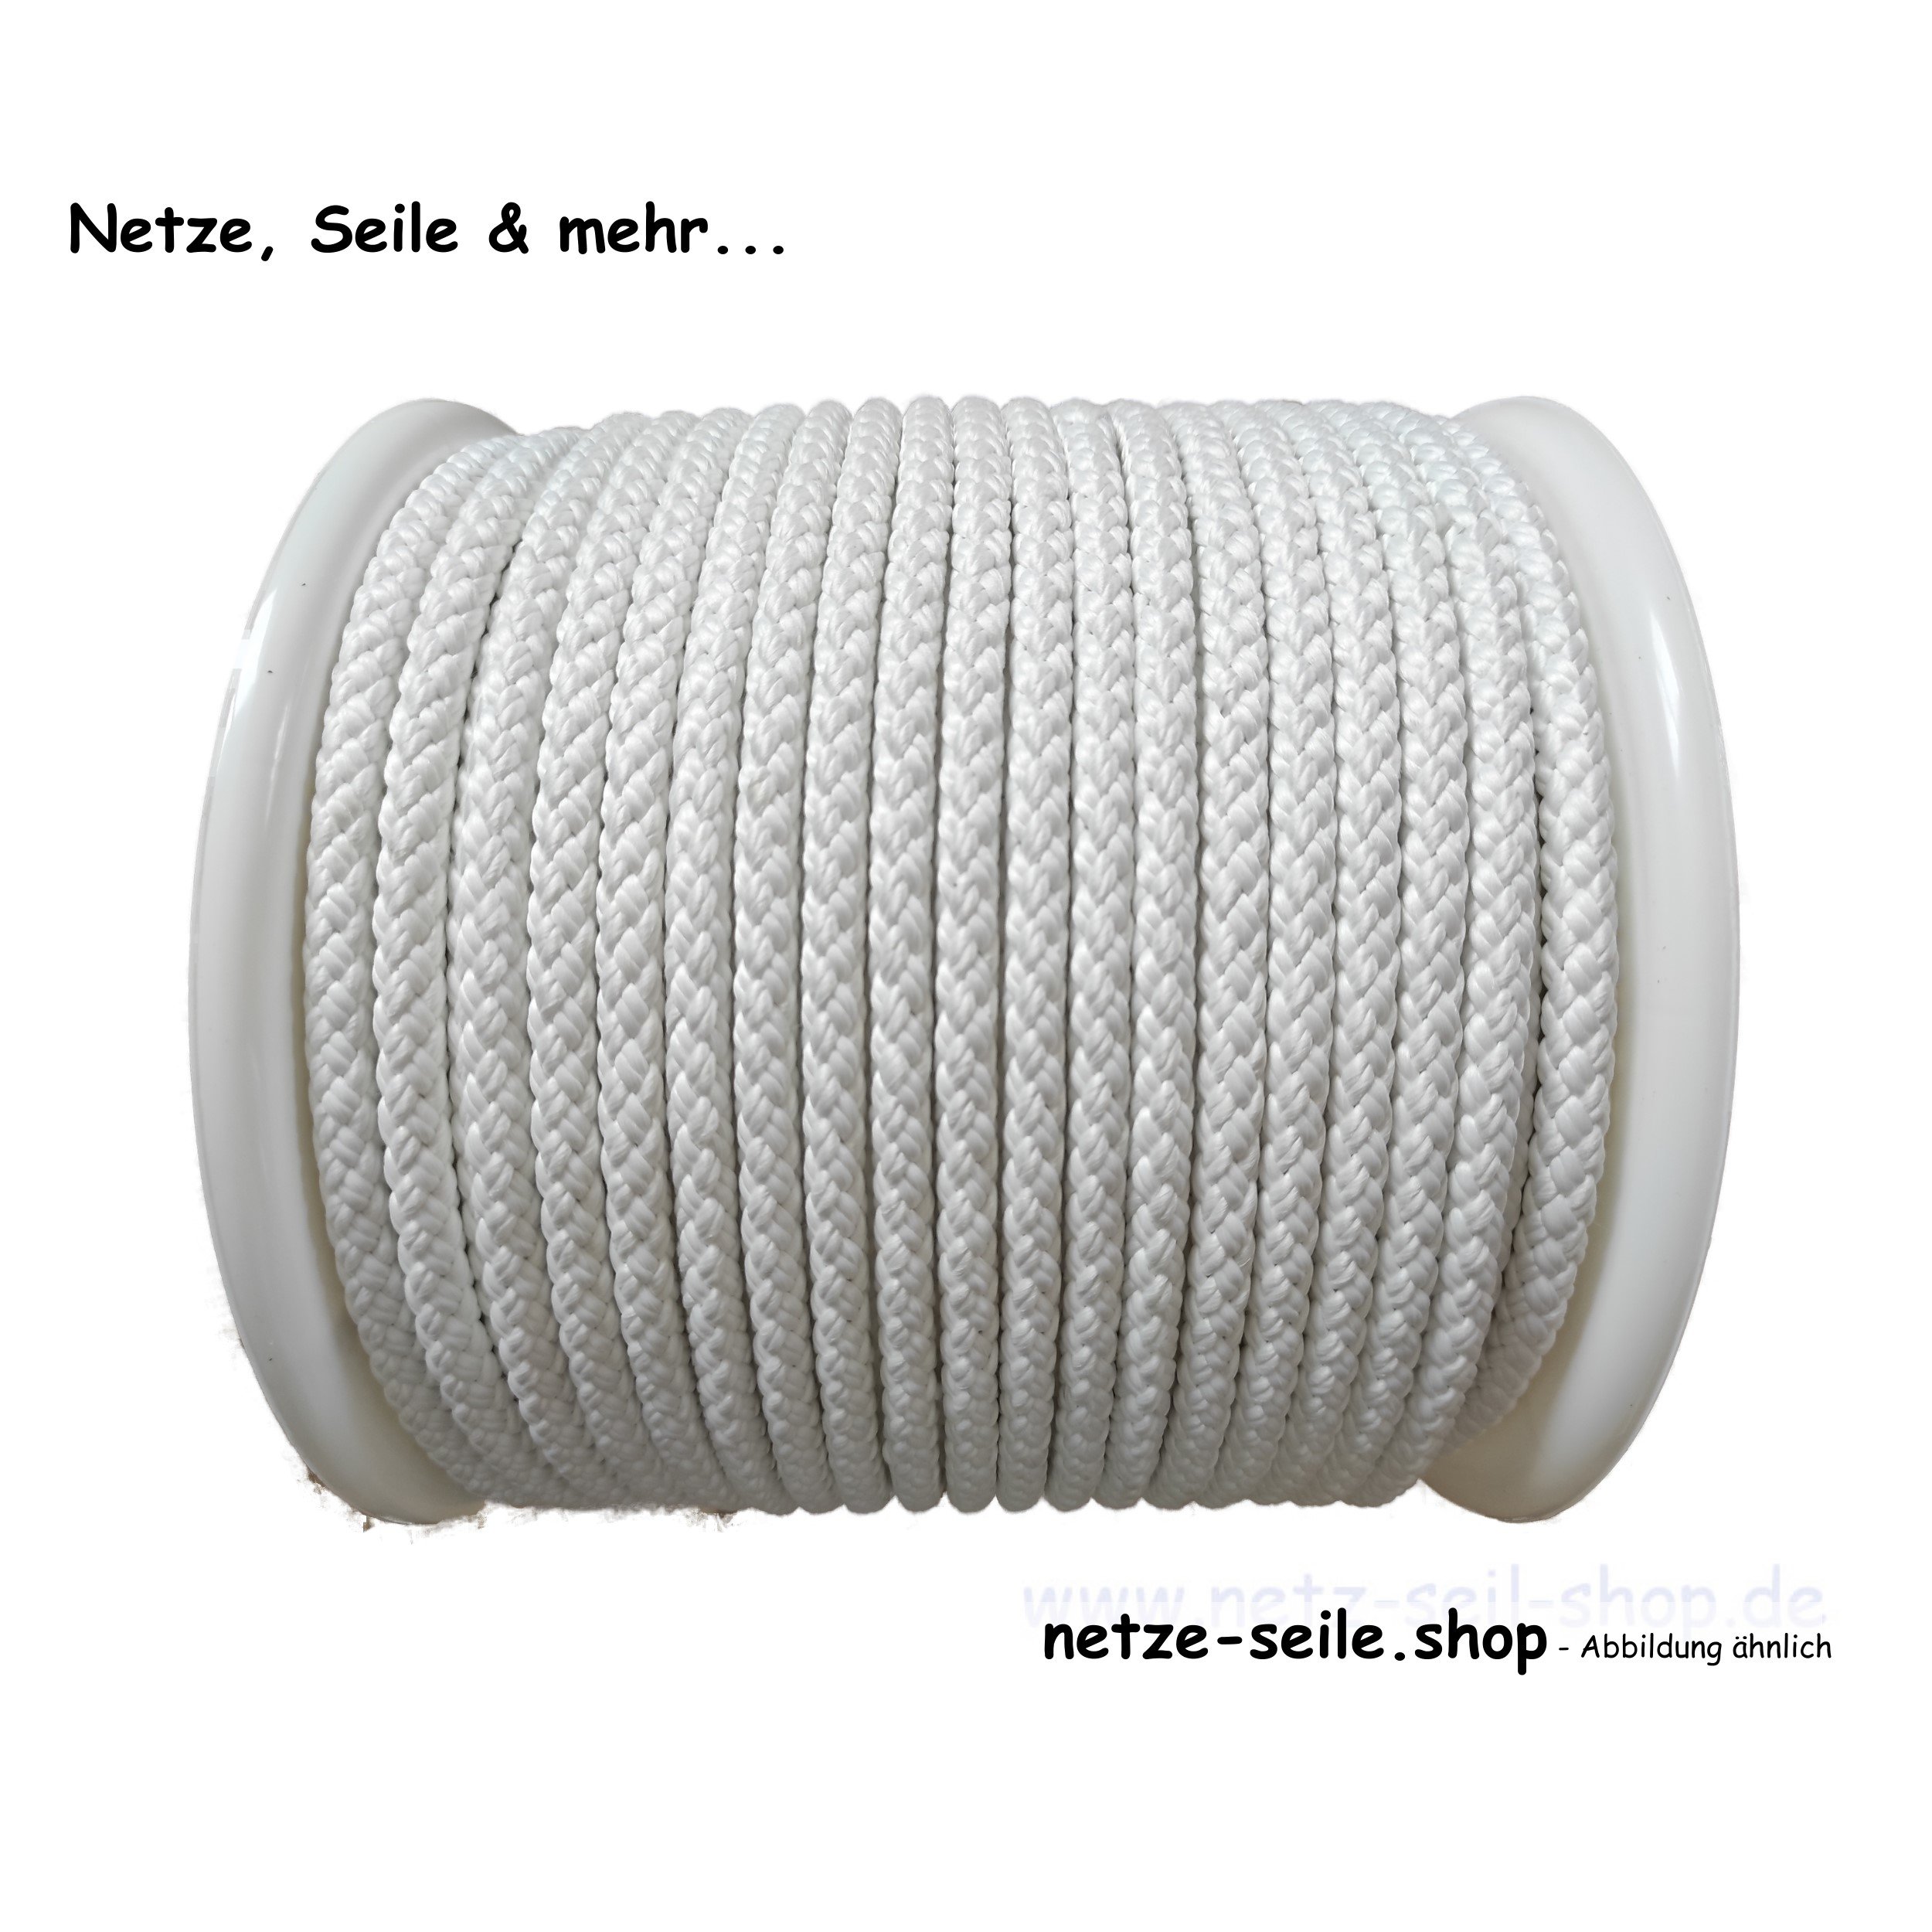 Corde en nylon tressée avec noyau Ø 10mm, longueur 100m, couleur blanche